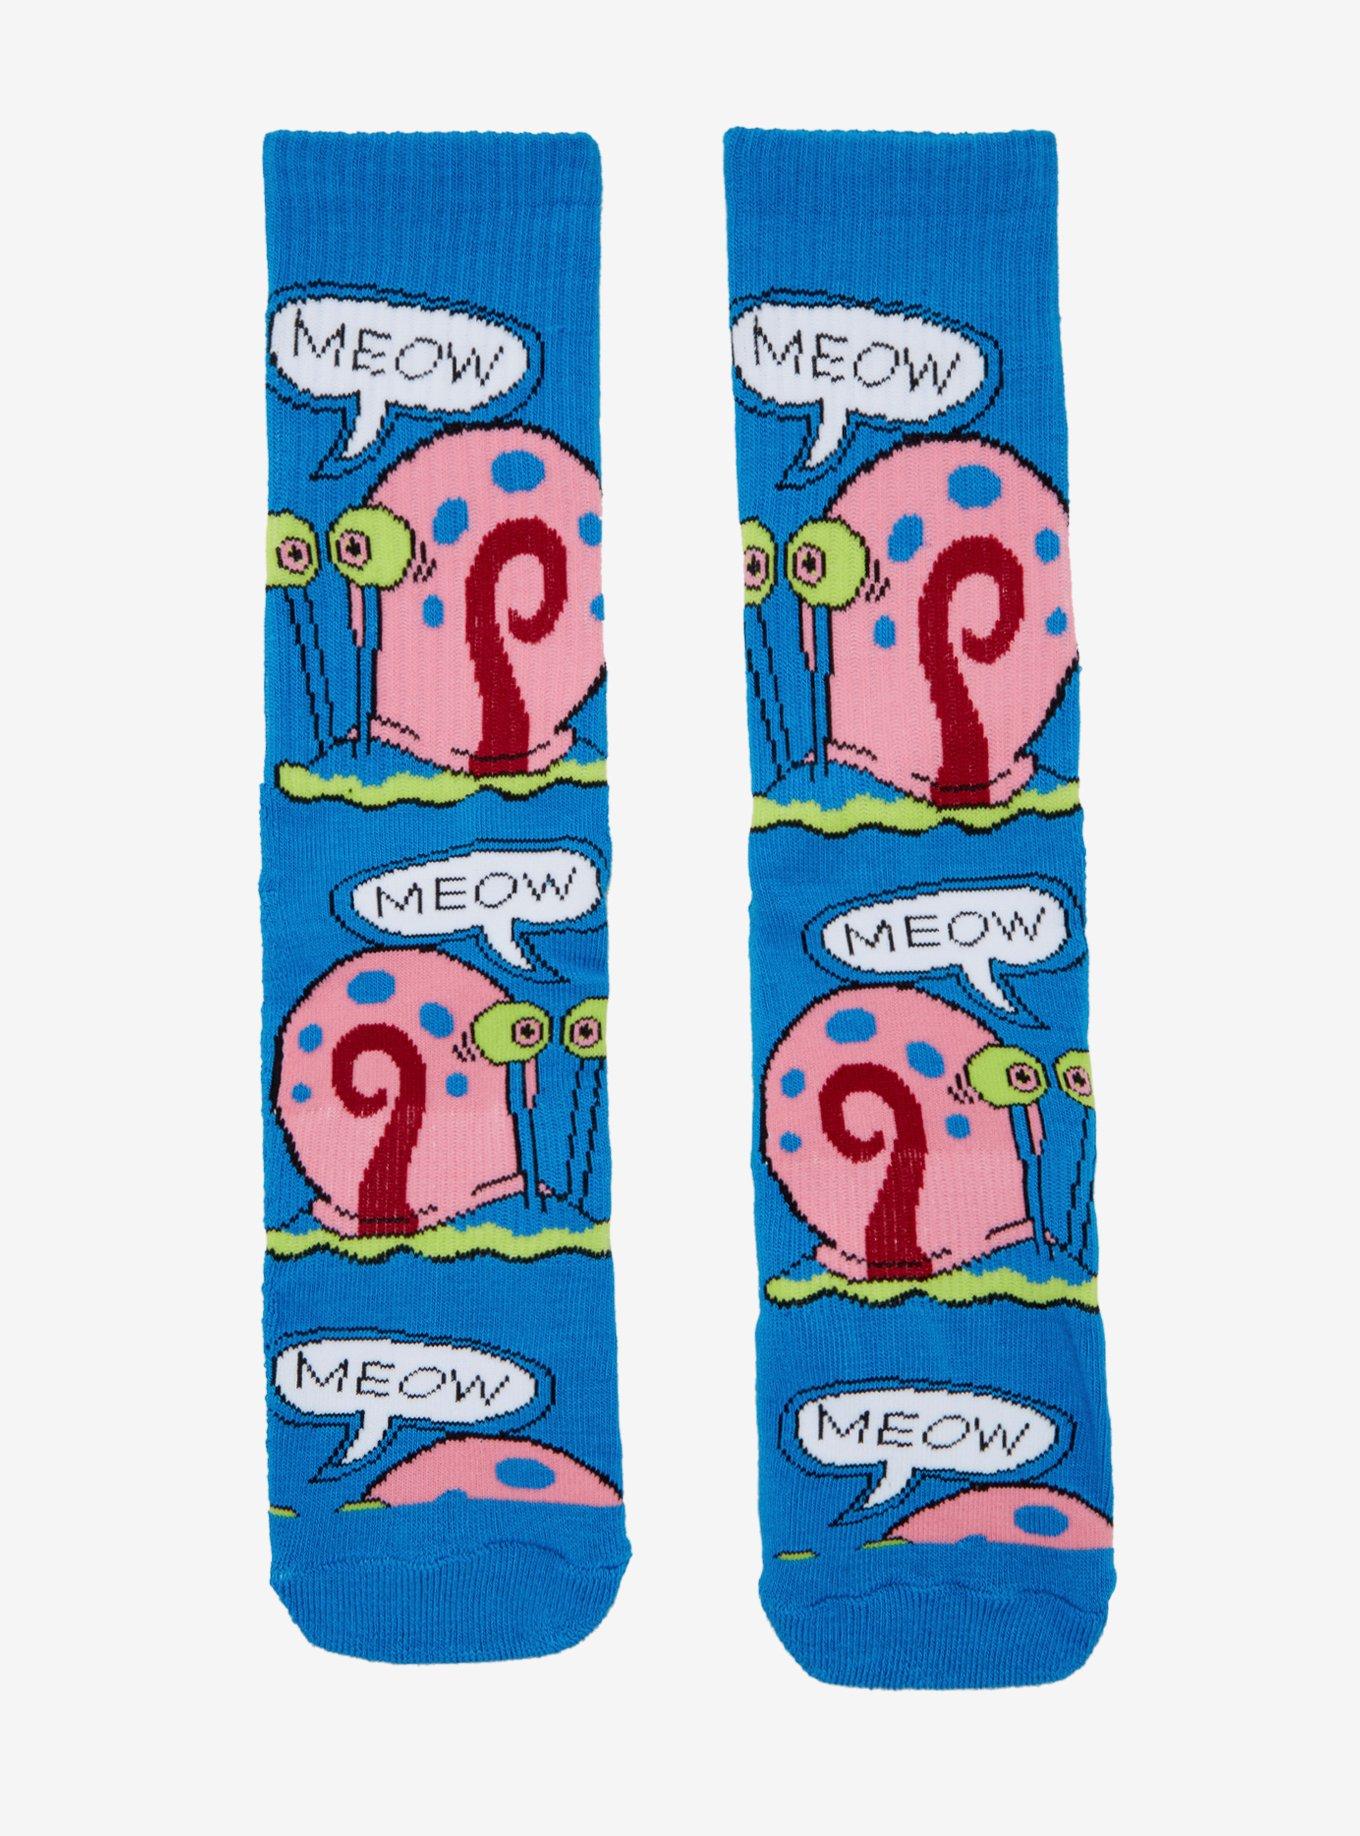 SpongeBob SquarePants Gary Meow Crew Socks, , hi-res